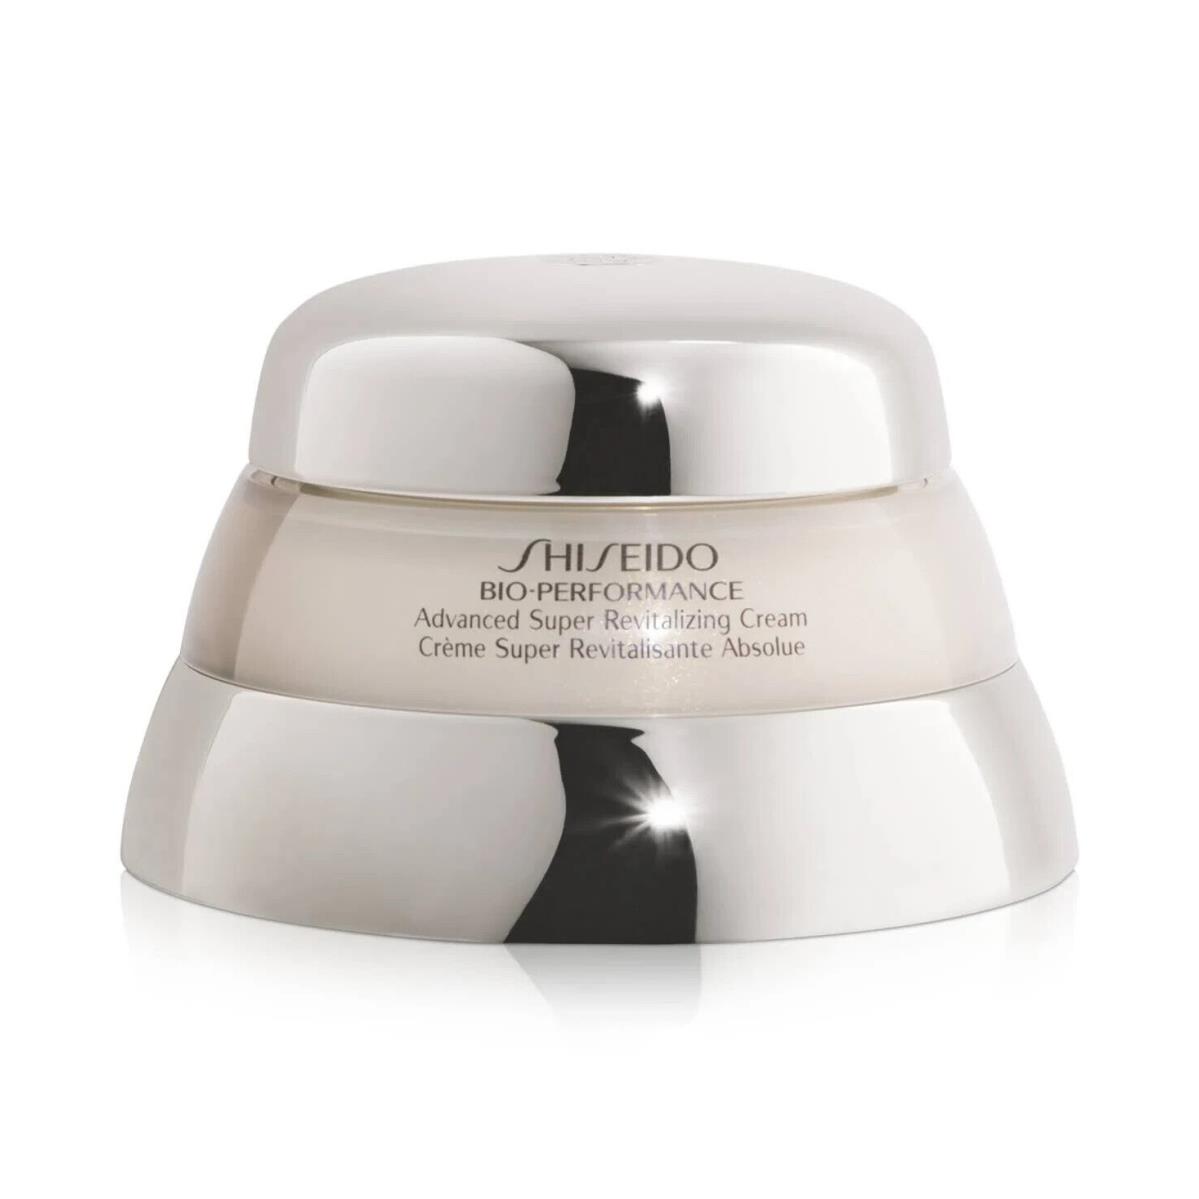 Shiseido Bio-performance Advanced Super Revitalizing Cream 1.7 Oz- 50 ml